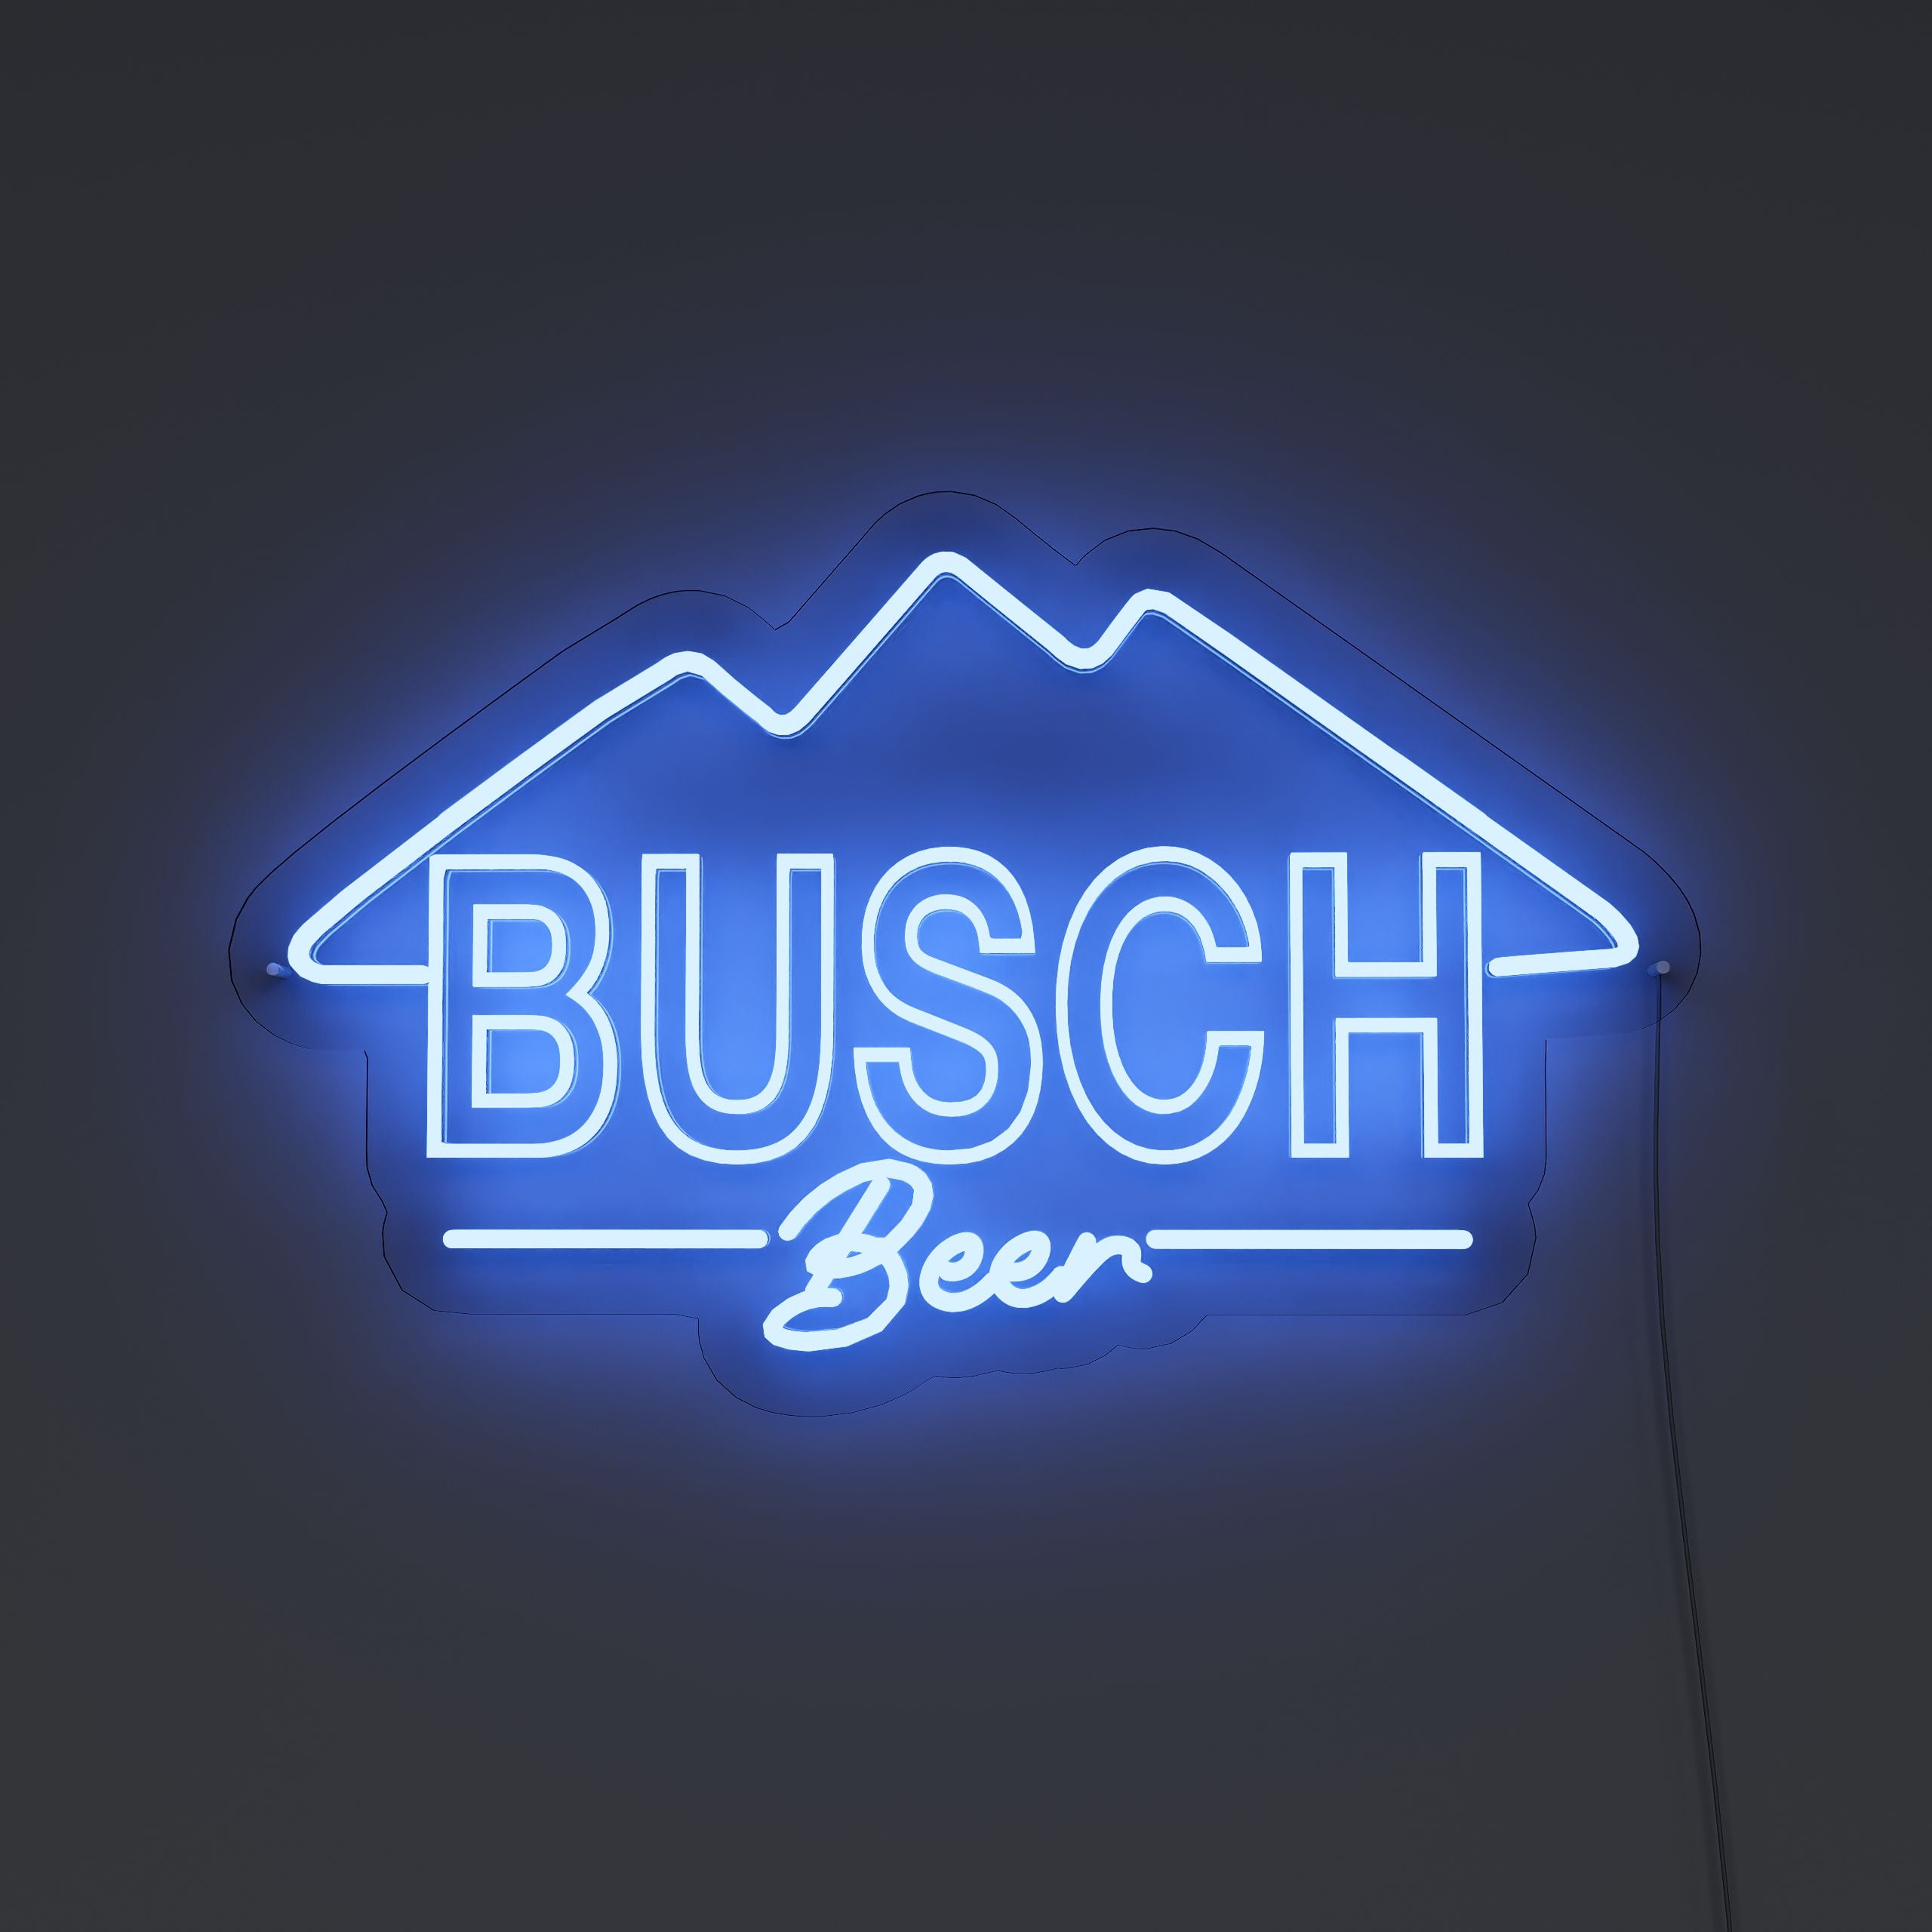 sbusch-light-neon-sign-DarkBlue-Neon-sign-Lite